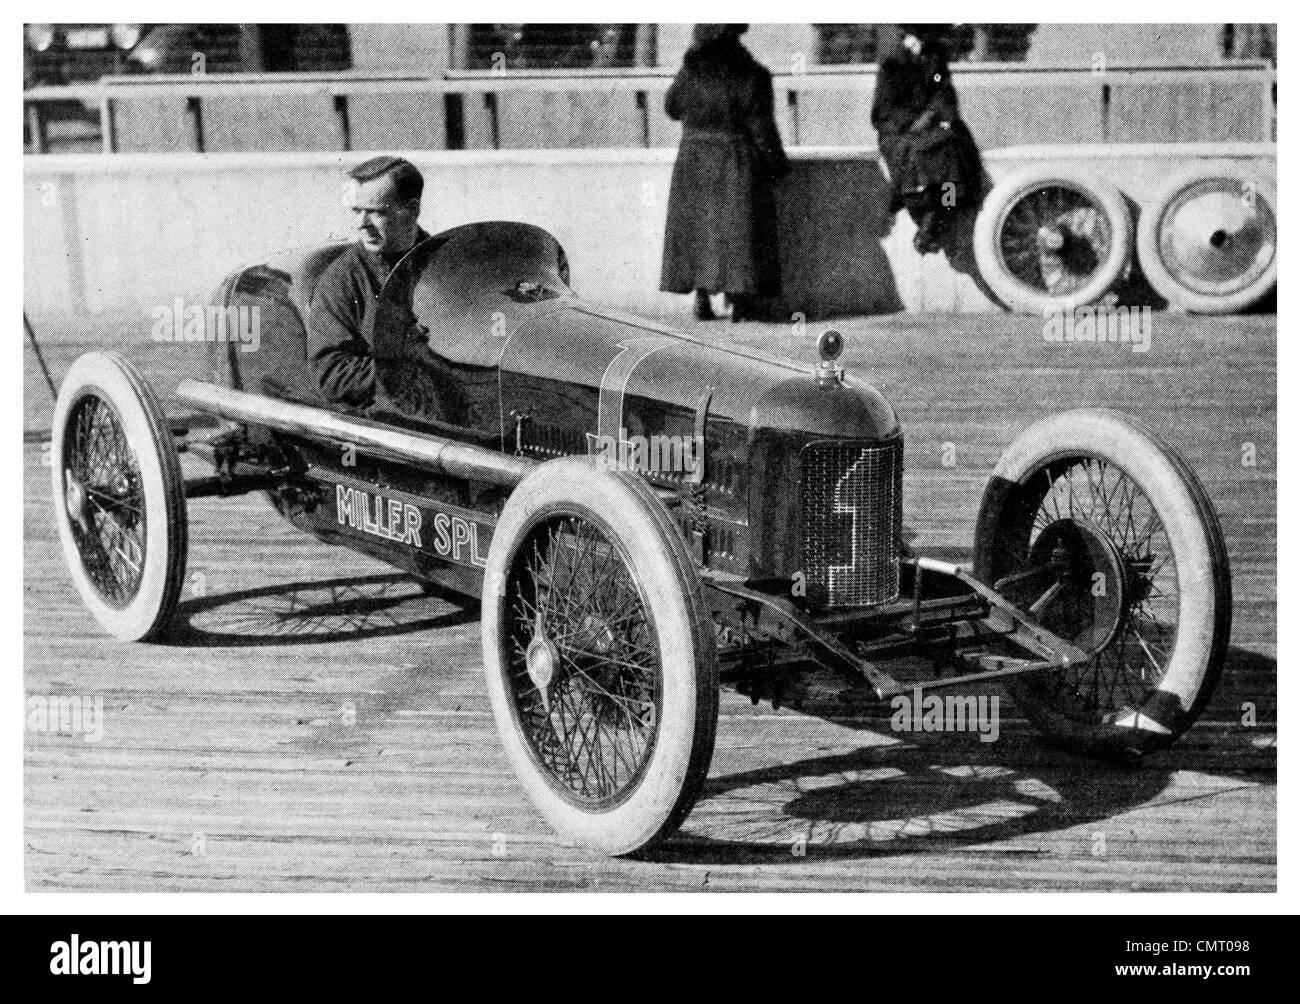 1923 macchina Power racing car Miller SPL Foto Stock